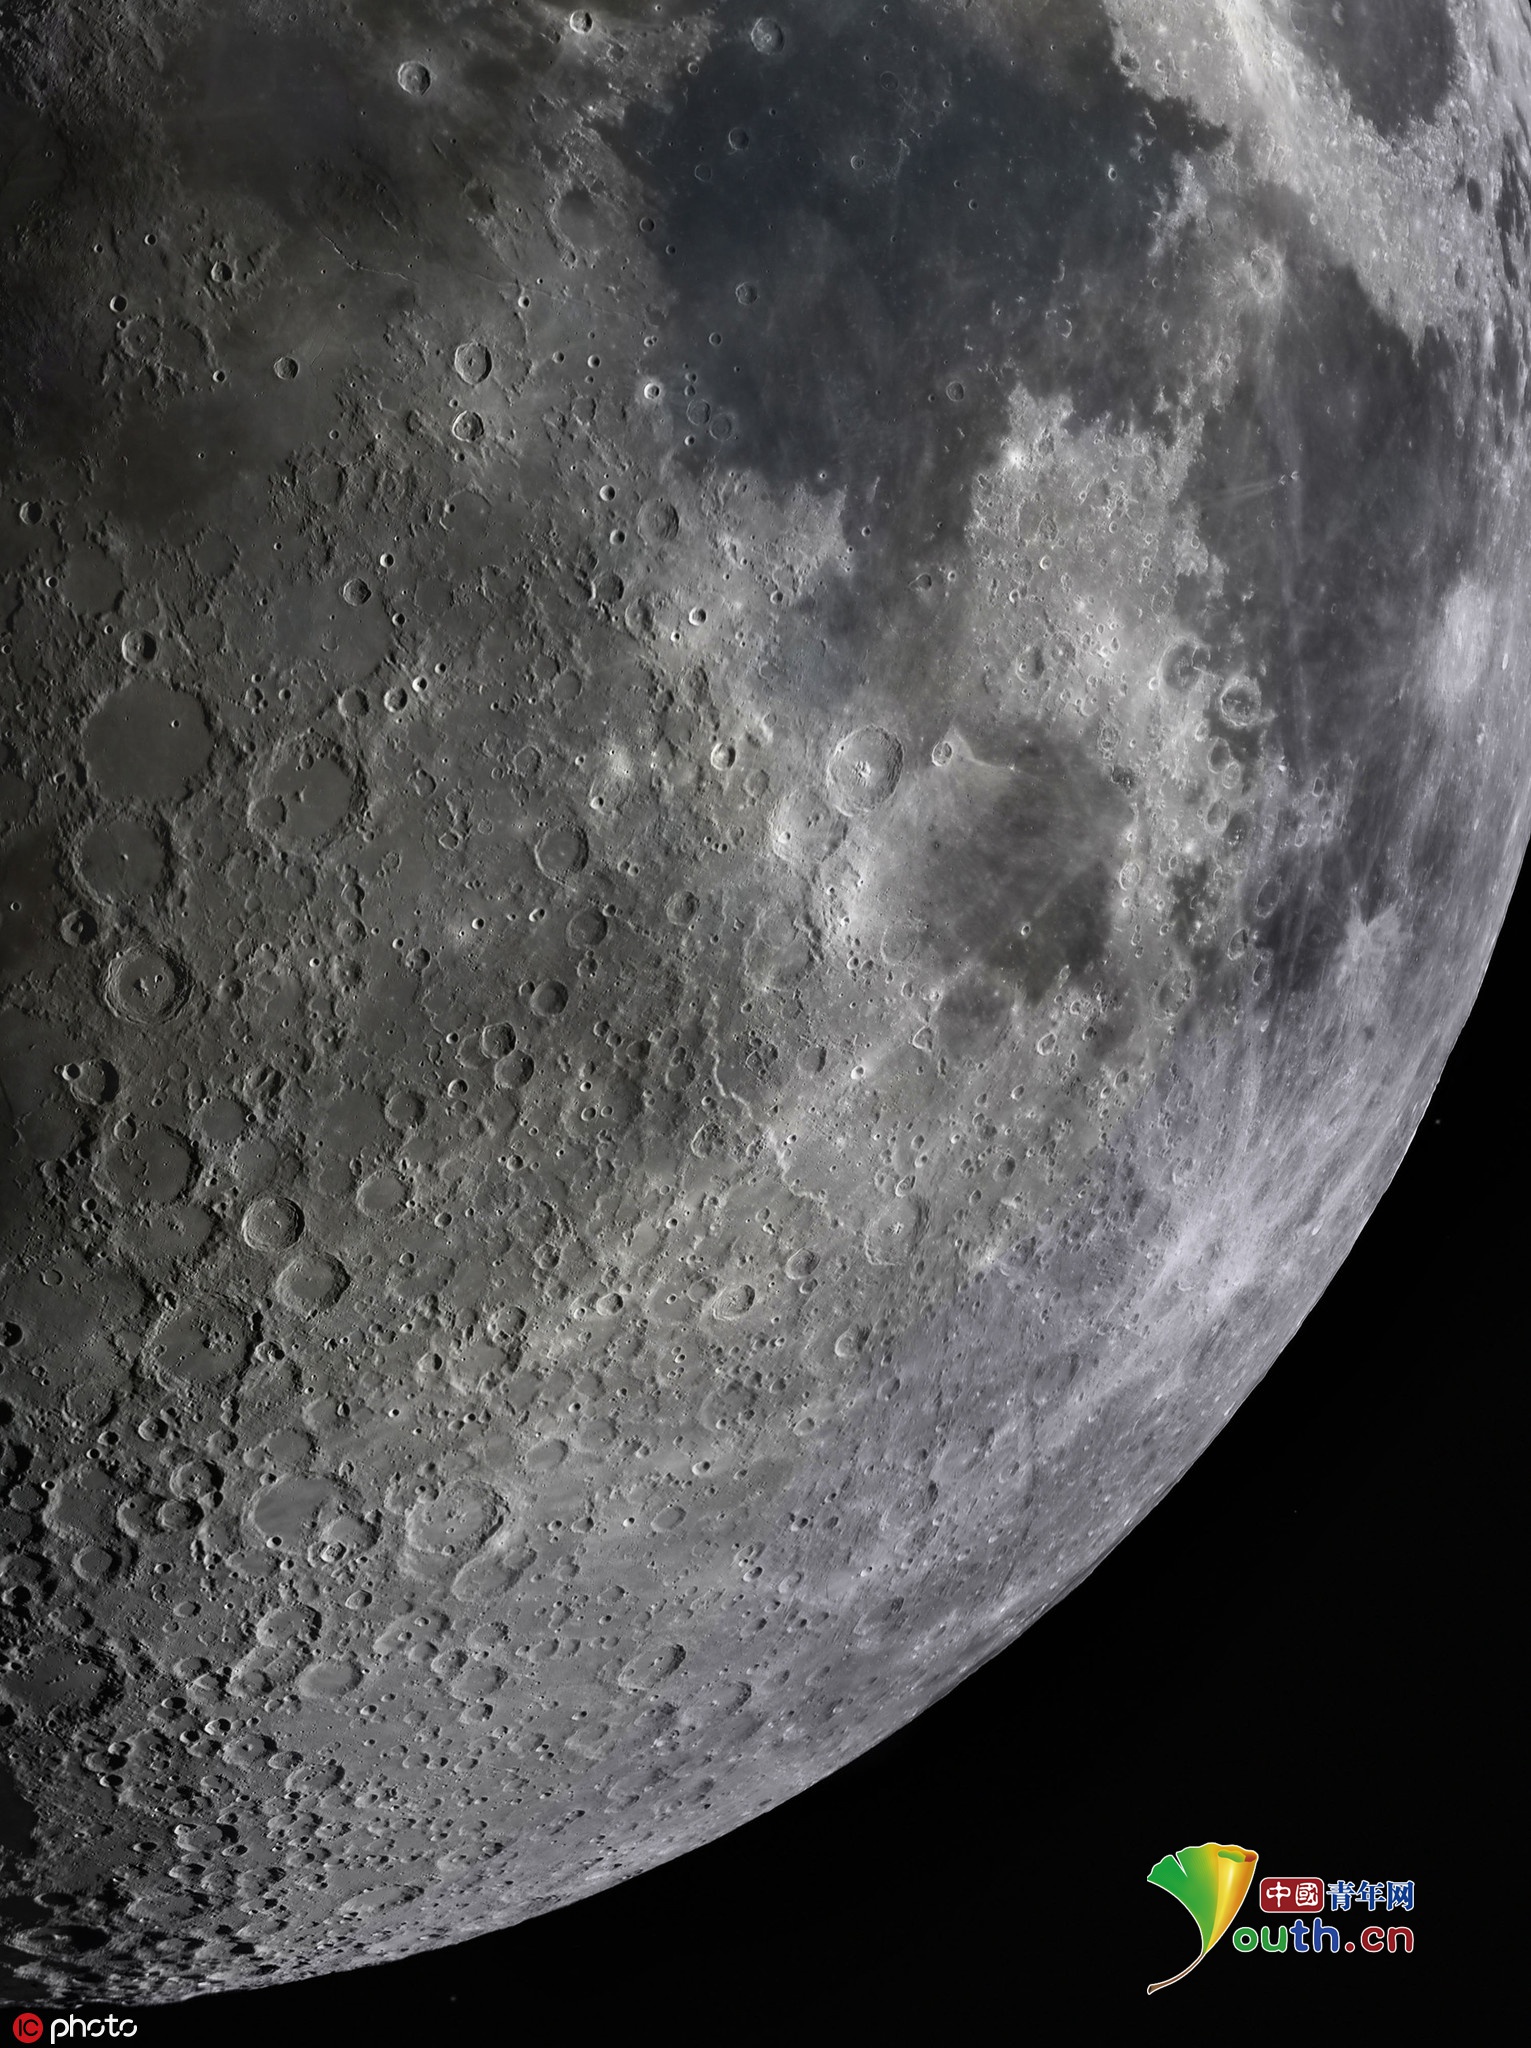 堪比nasa!美天文爱好者用数万张照片还原最真实的月球